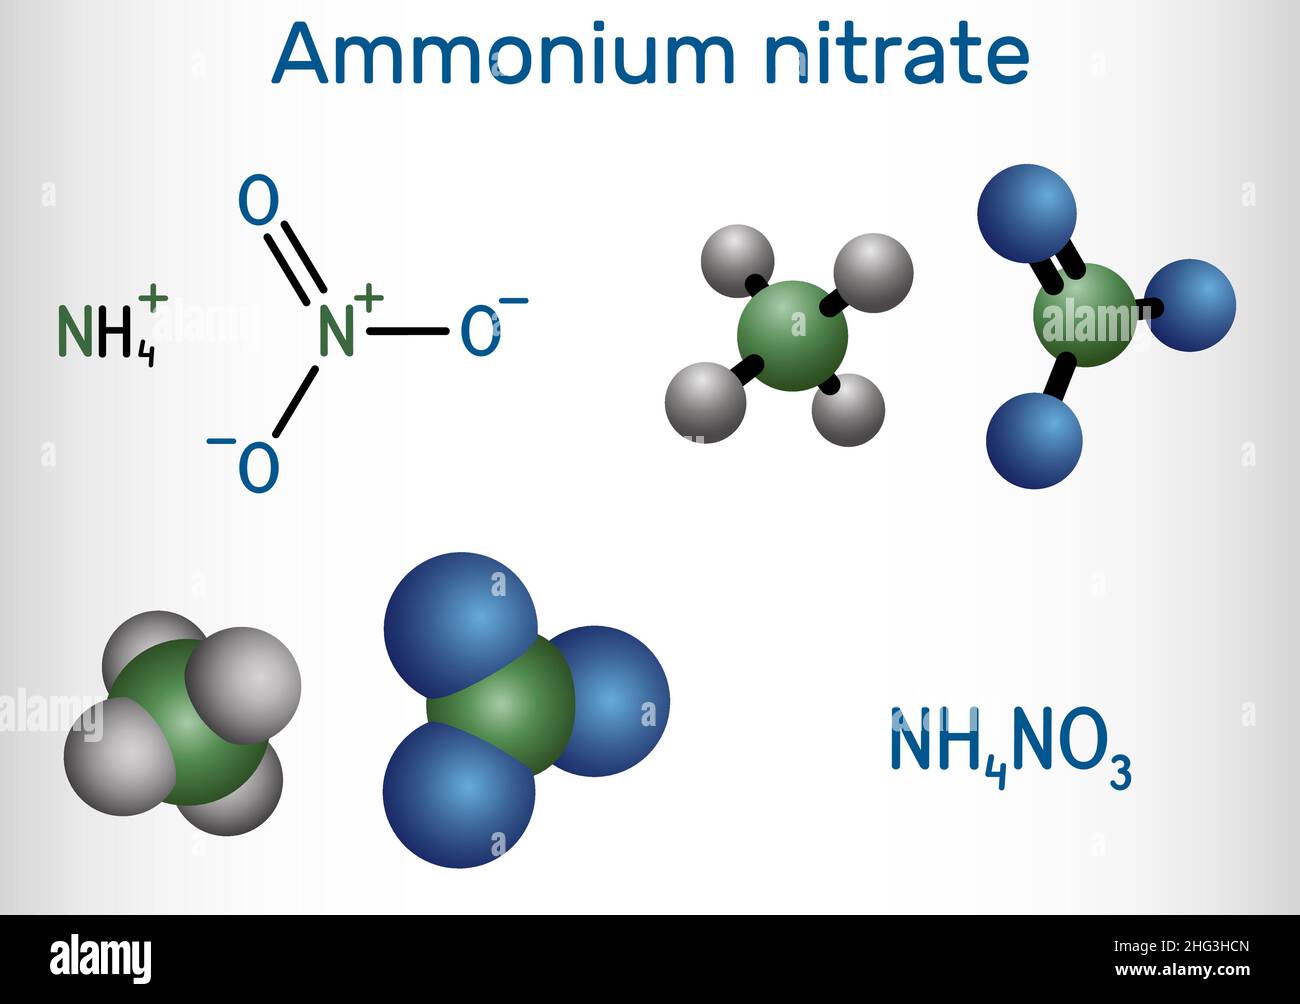 Нитрат аммония в аммиак реакция. Нитрат аммония строение молекулы. Нитрат аммония графическая формула. Молекула нитрата аммония. Молекула аммиачной селитры.